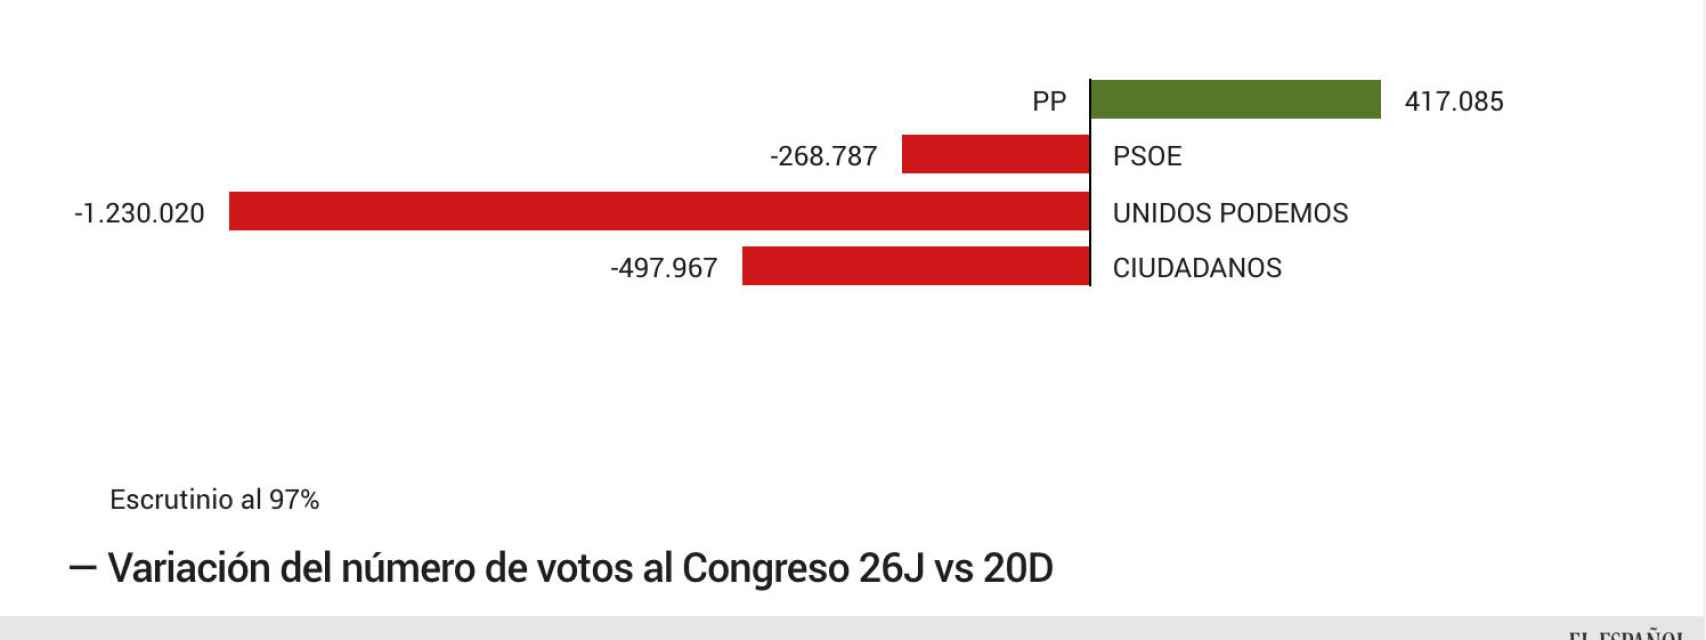 Los votos que han perdido los grandes partidos con respecto al 20D.